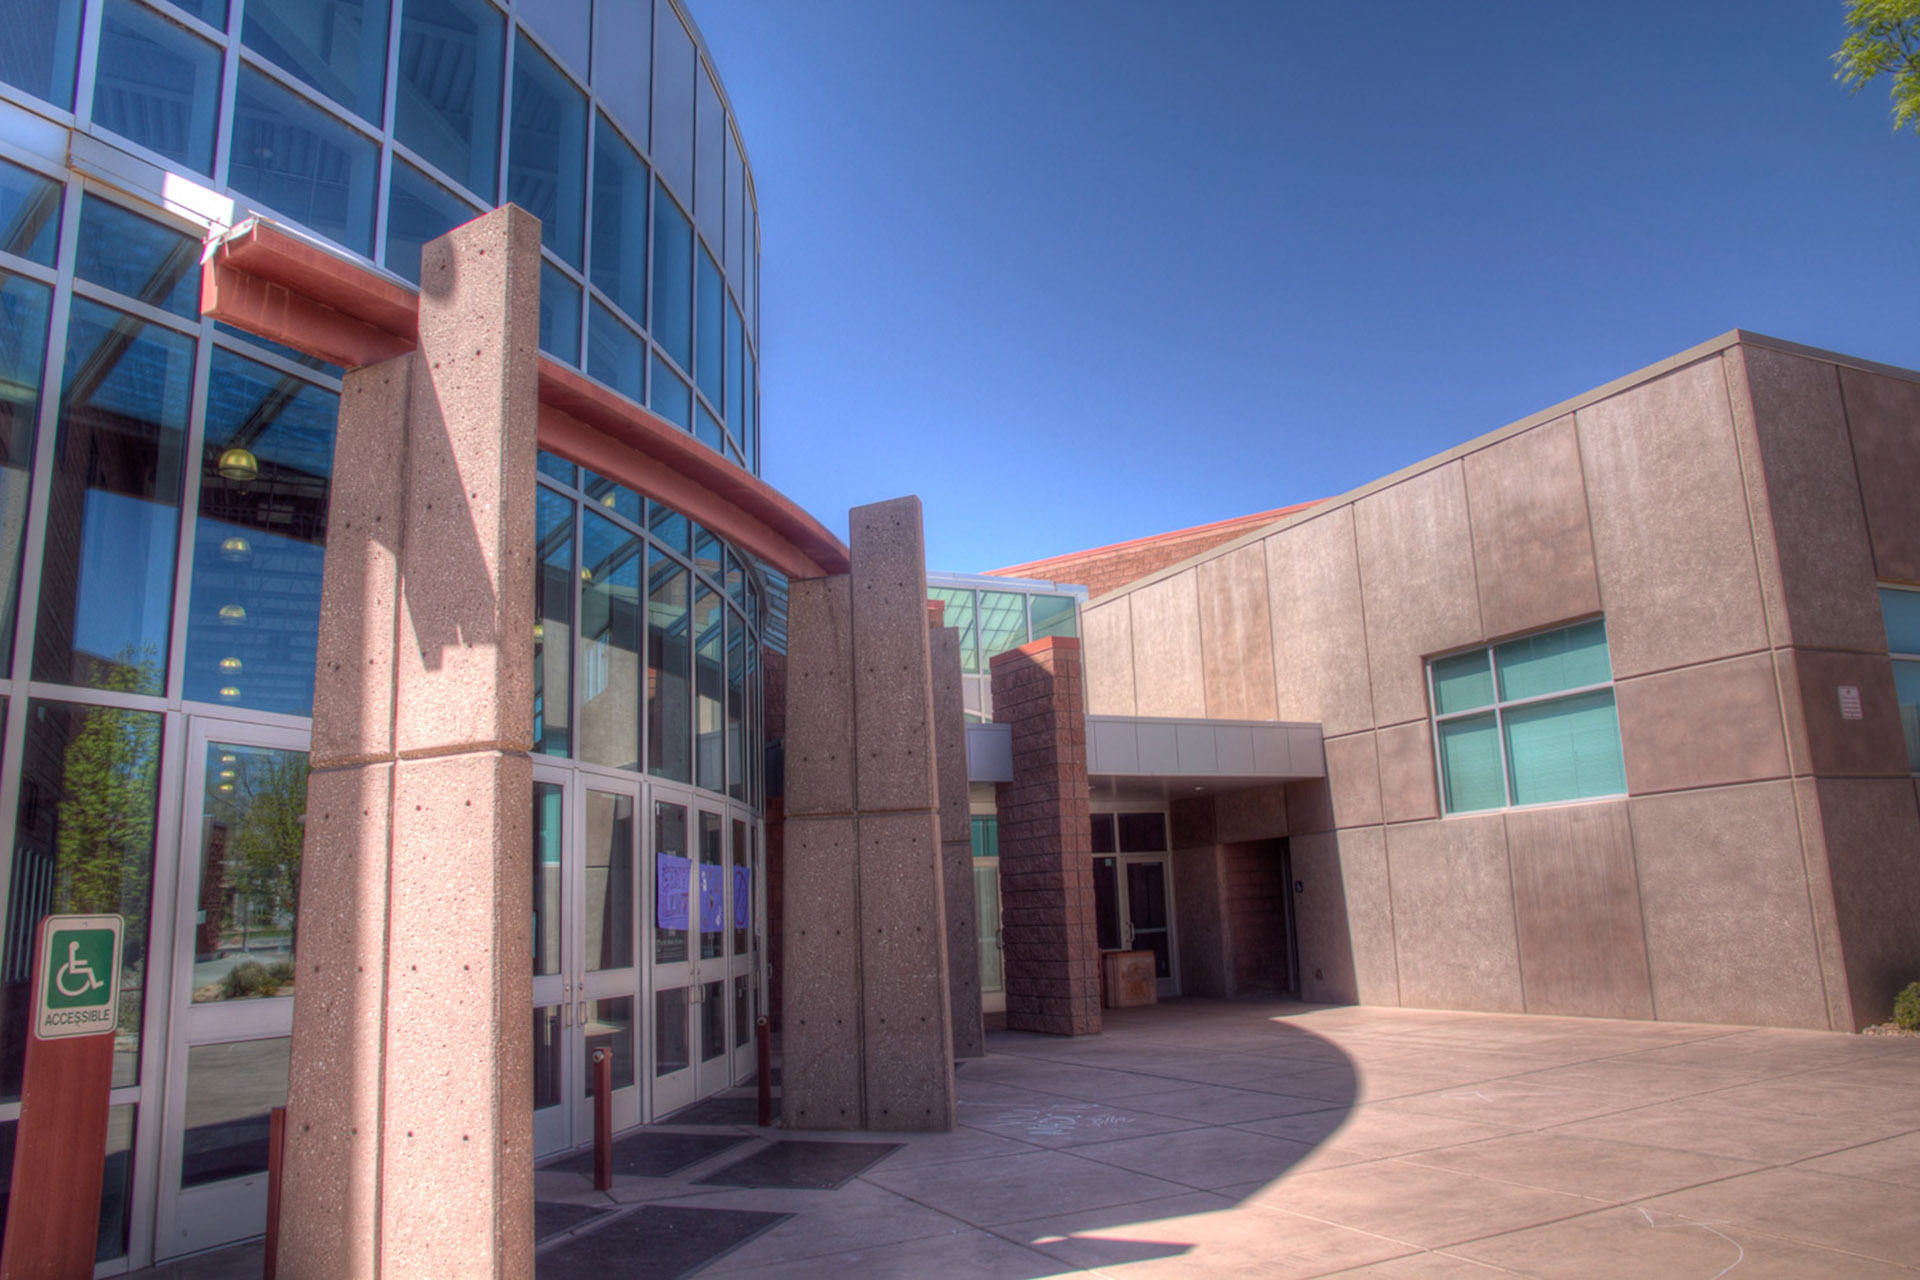 Dixie High School in St. George, Utah